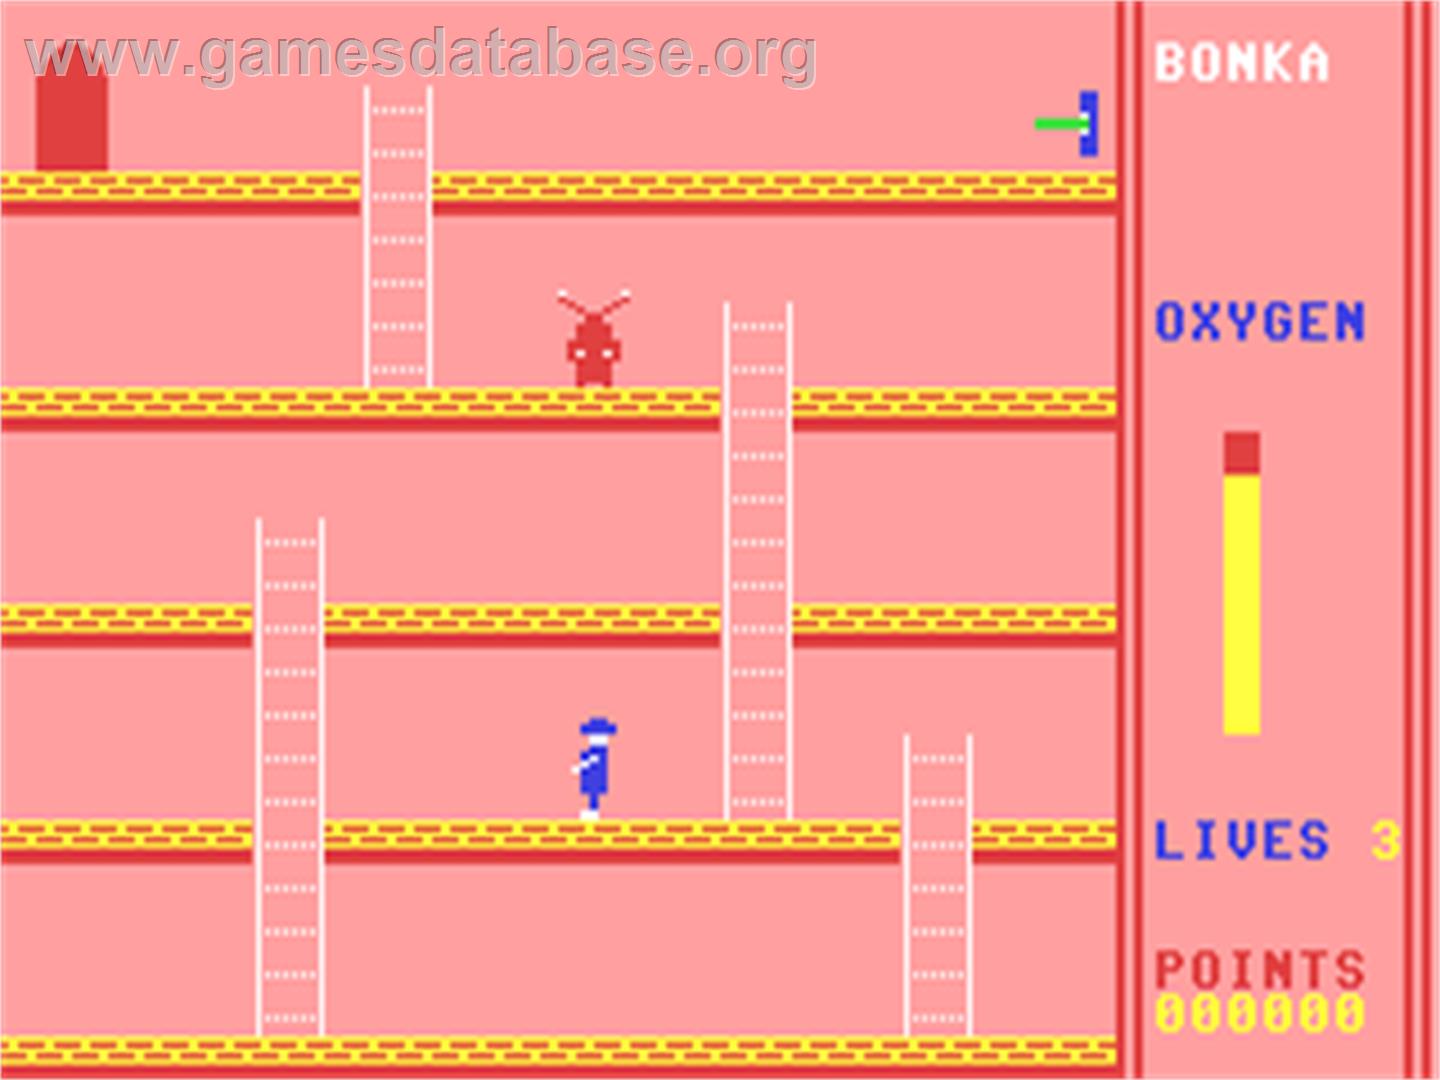 Bonka - Commodore 64 - Artwork - In Game